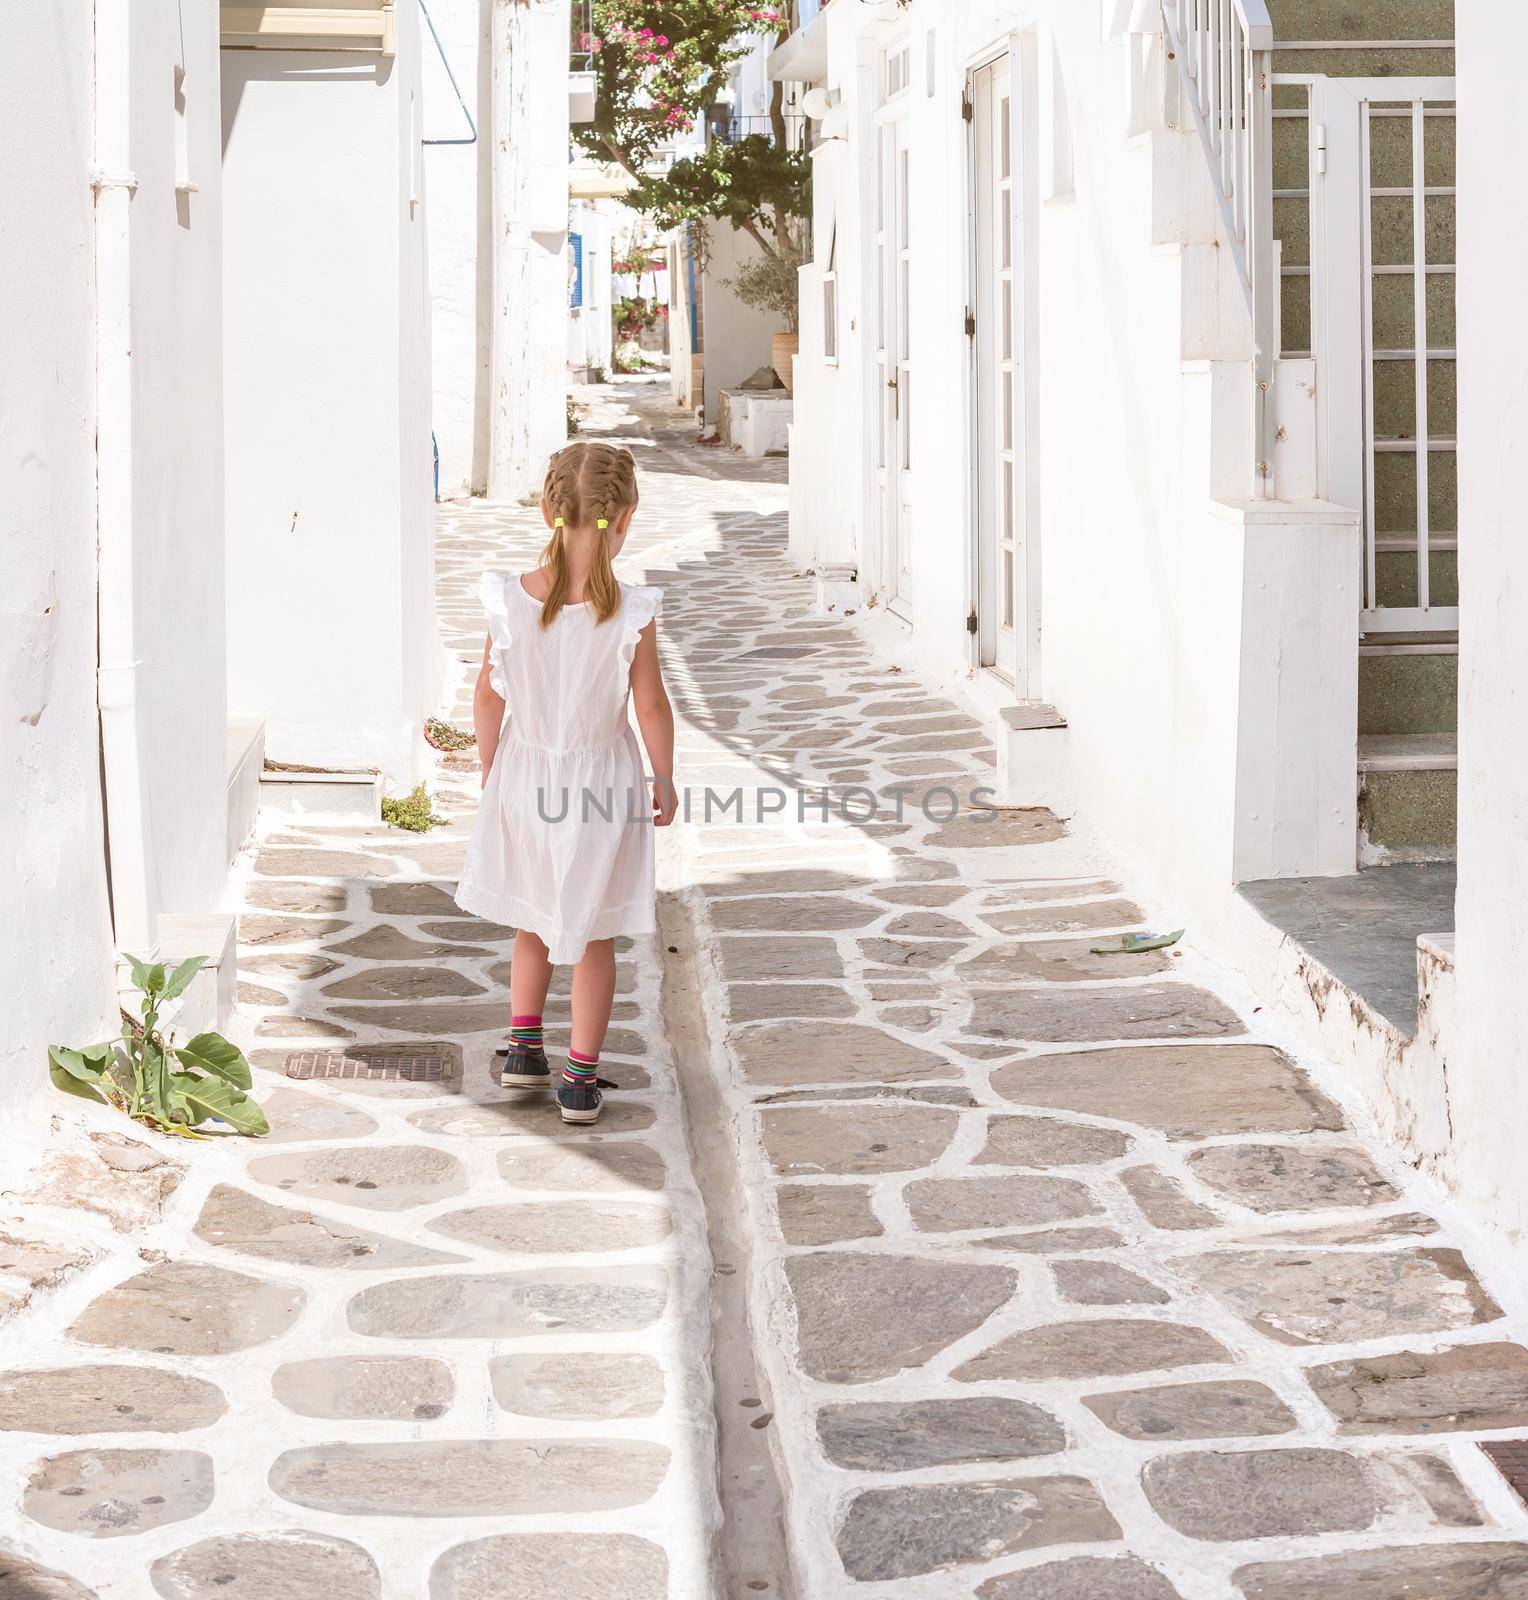 Little girl walking the narrow alley in Greece by tan4ikk1